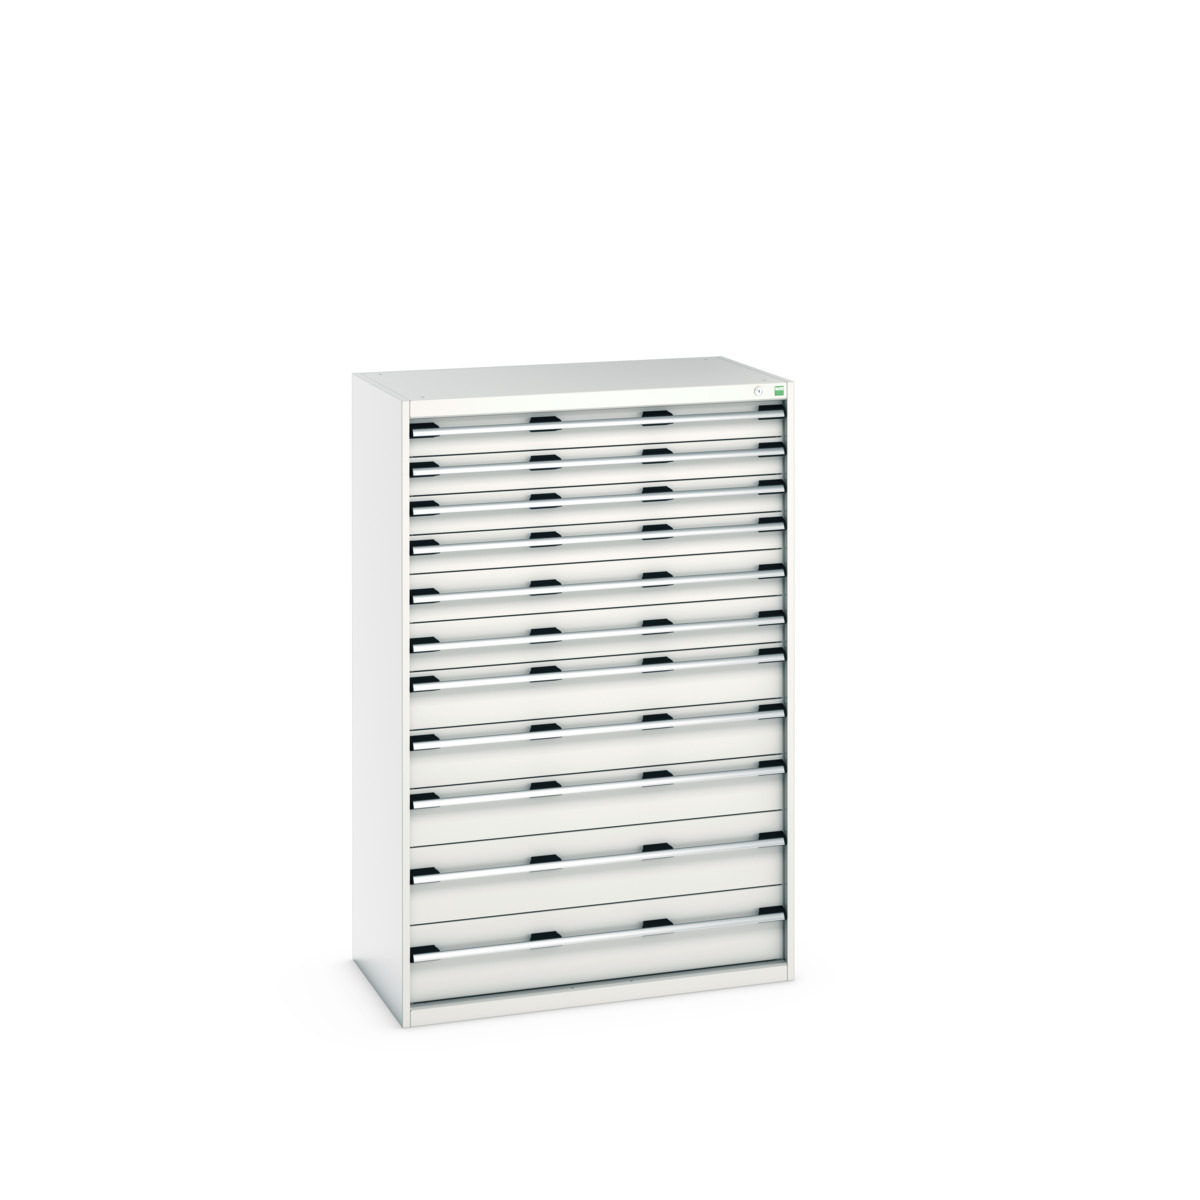 40021046.16V - cubio drawer cabinet